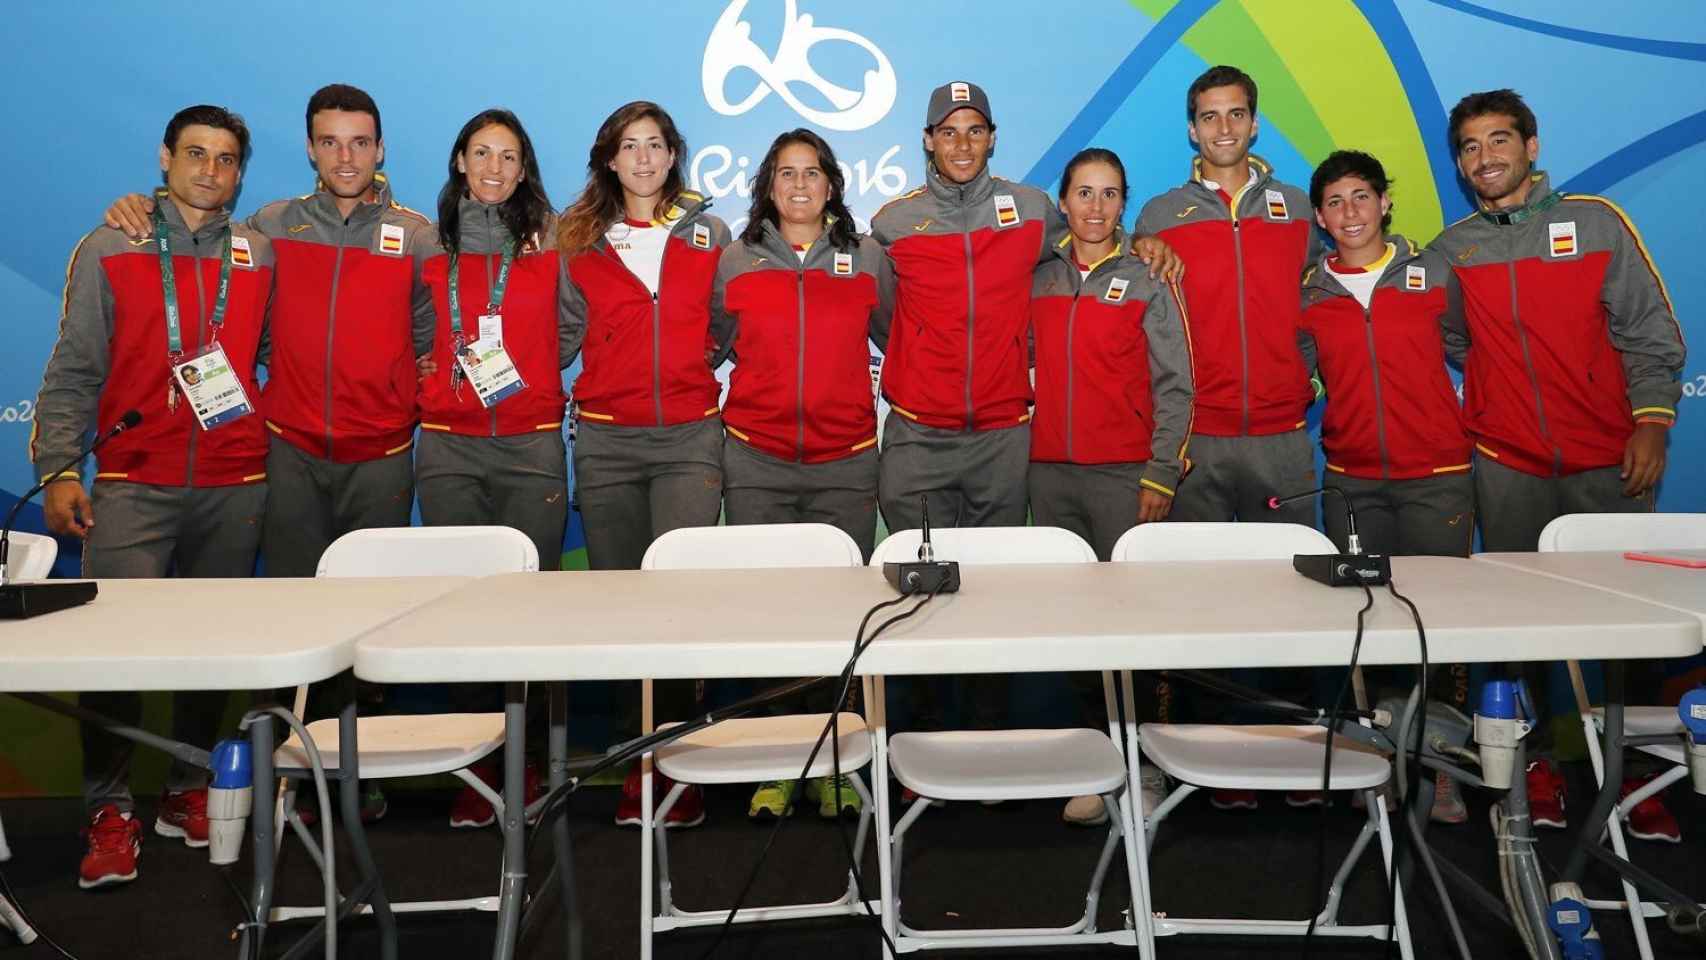 Miembros del equipo olímpico de tenis.